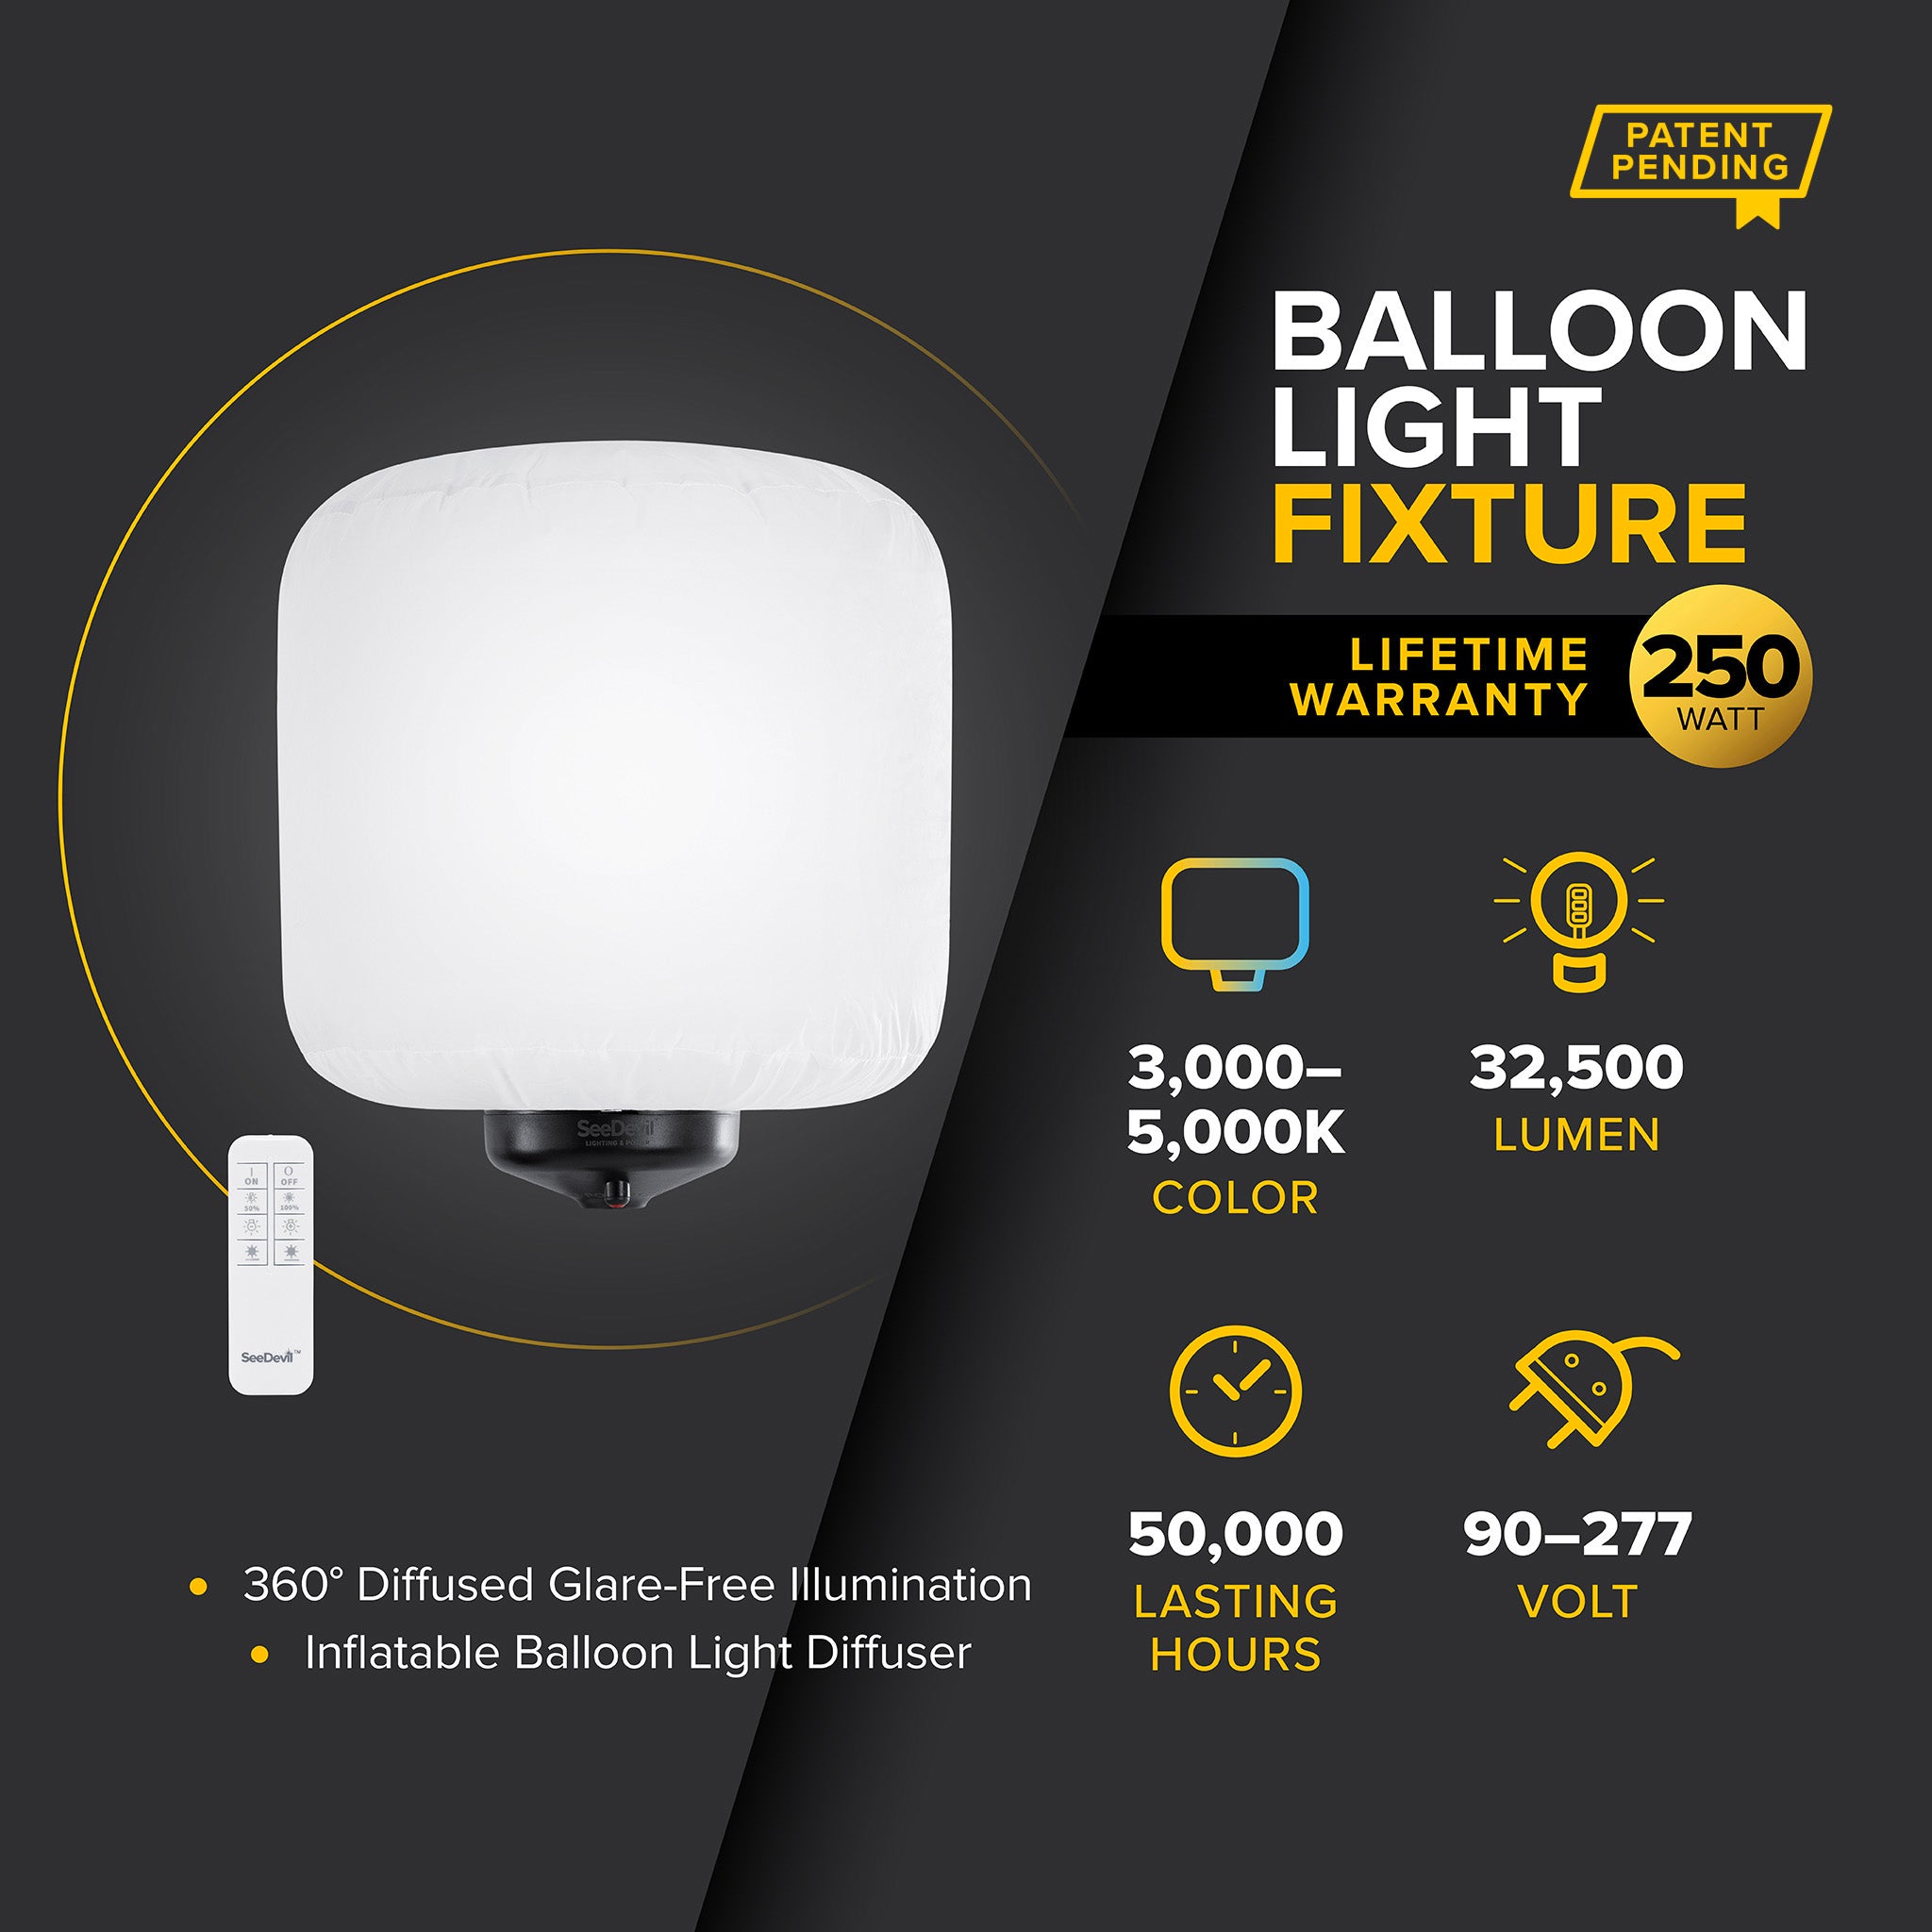 G3 250 Watt Balloon Light Fixture